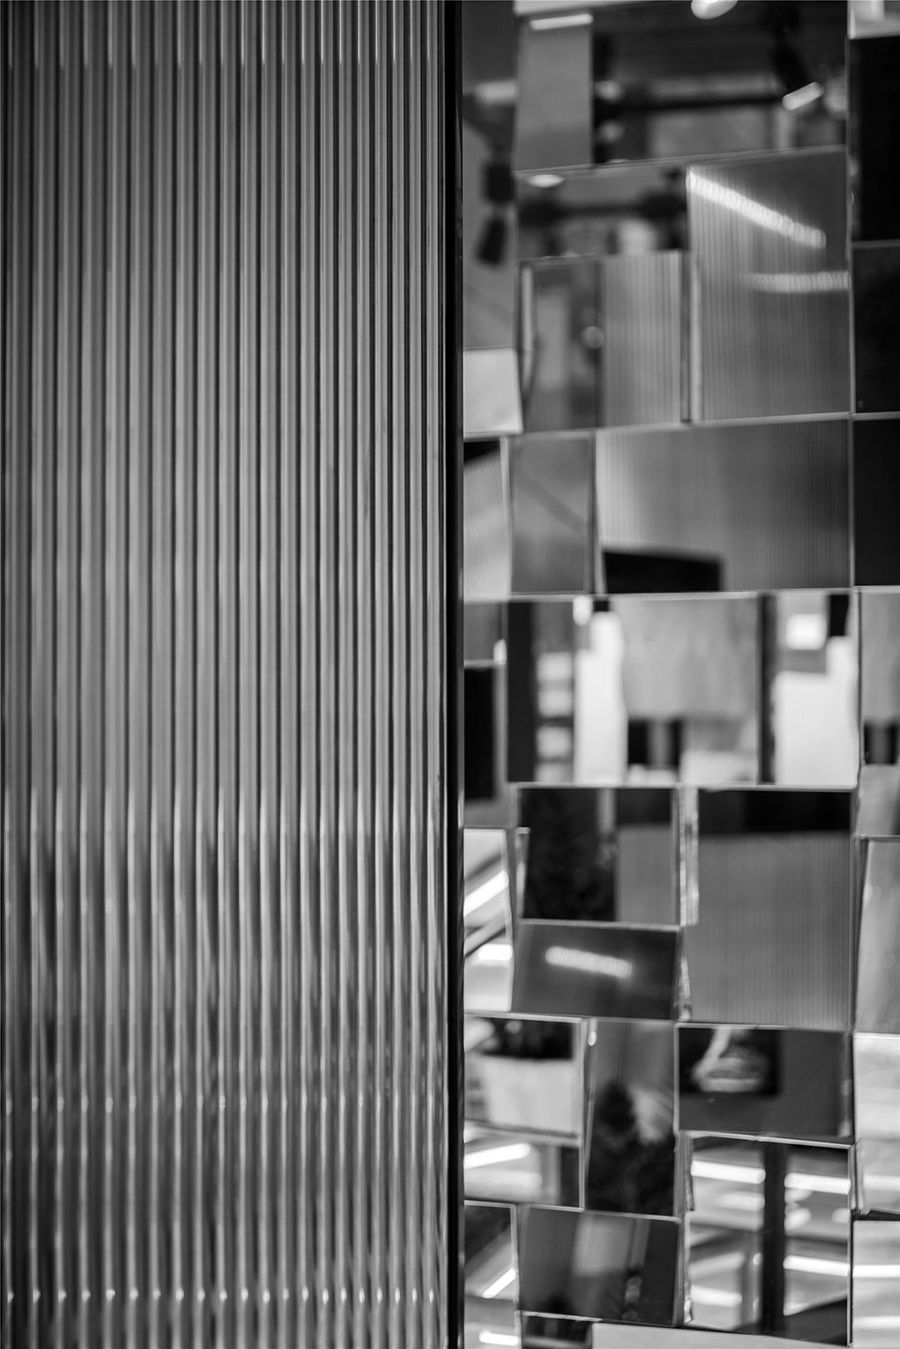 无锡罗浮宫陶瓷展馆 / 黑白现代风格